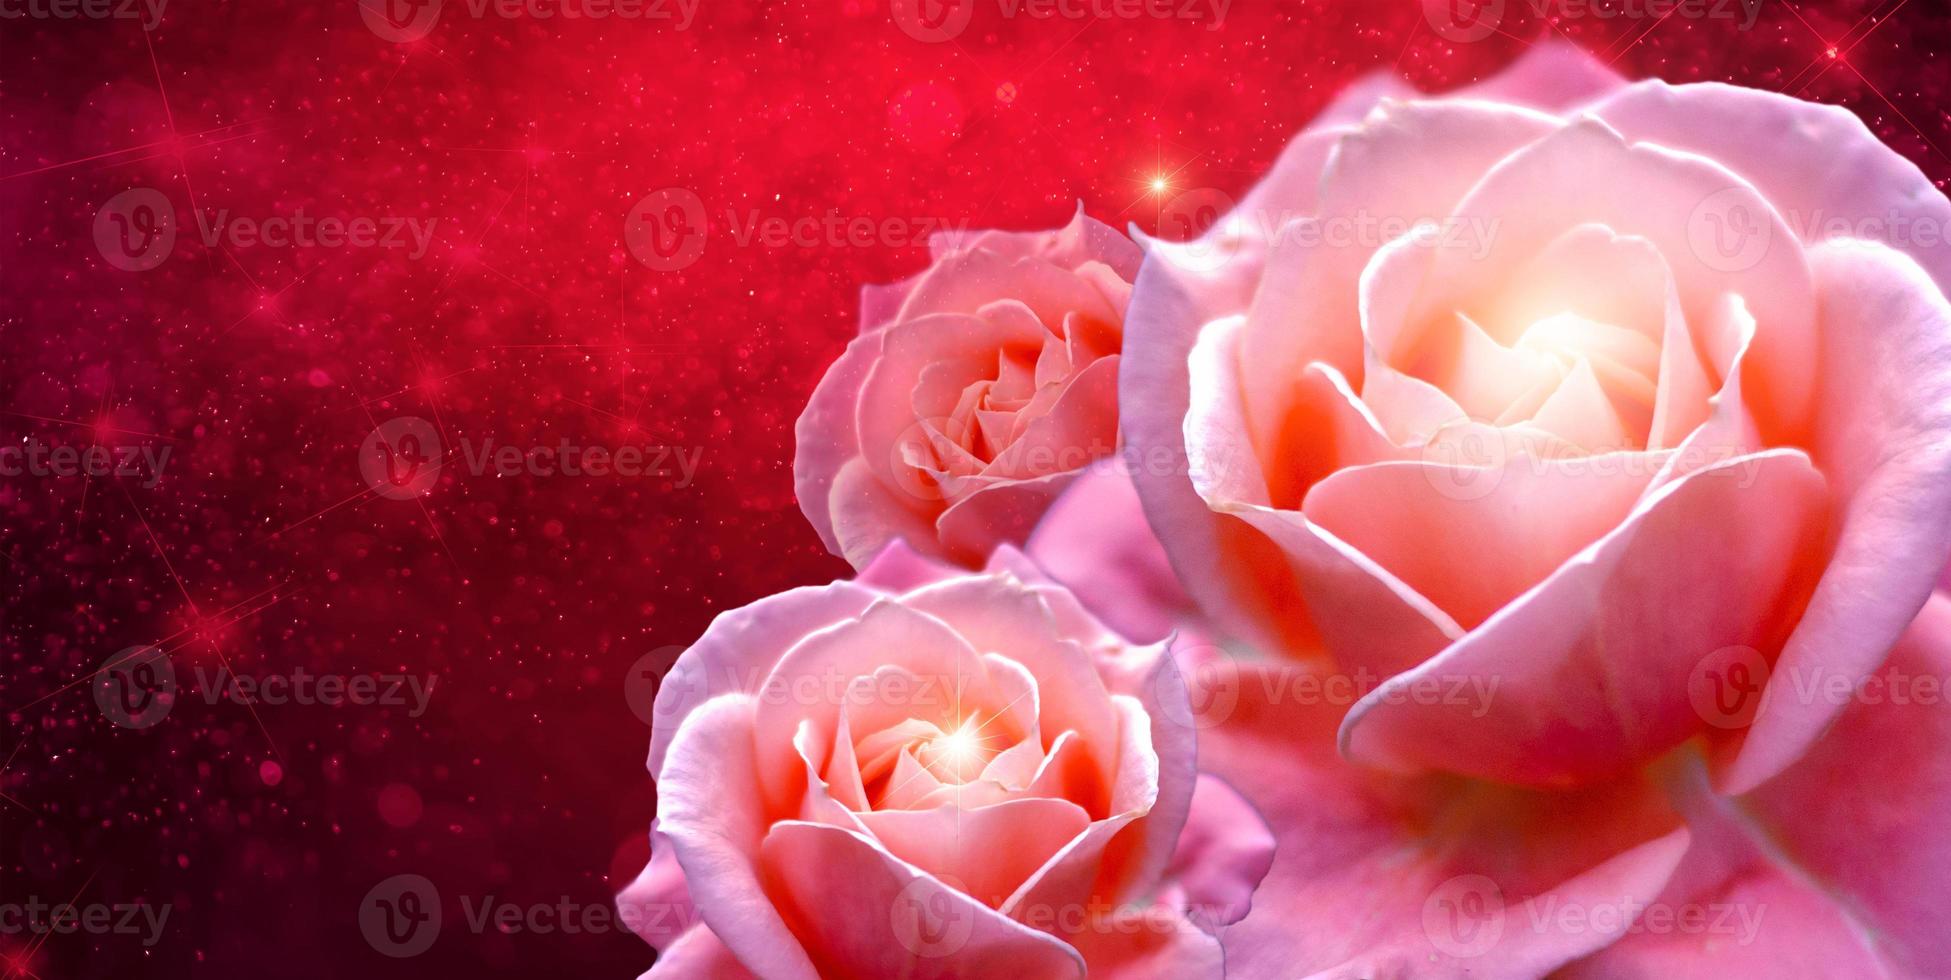 banner rose rosa rosa rossa bokeh sfondo rosso avere spazio per inserire testo foto